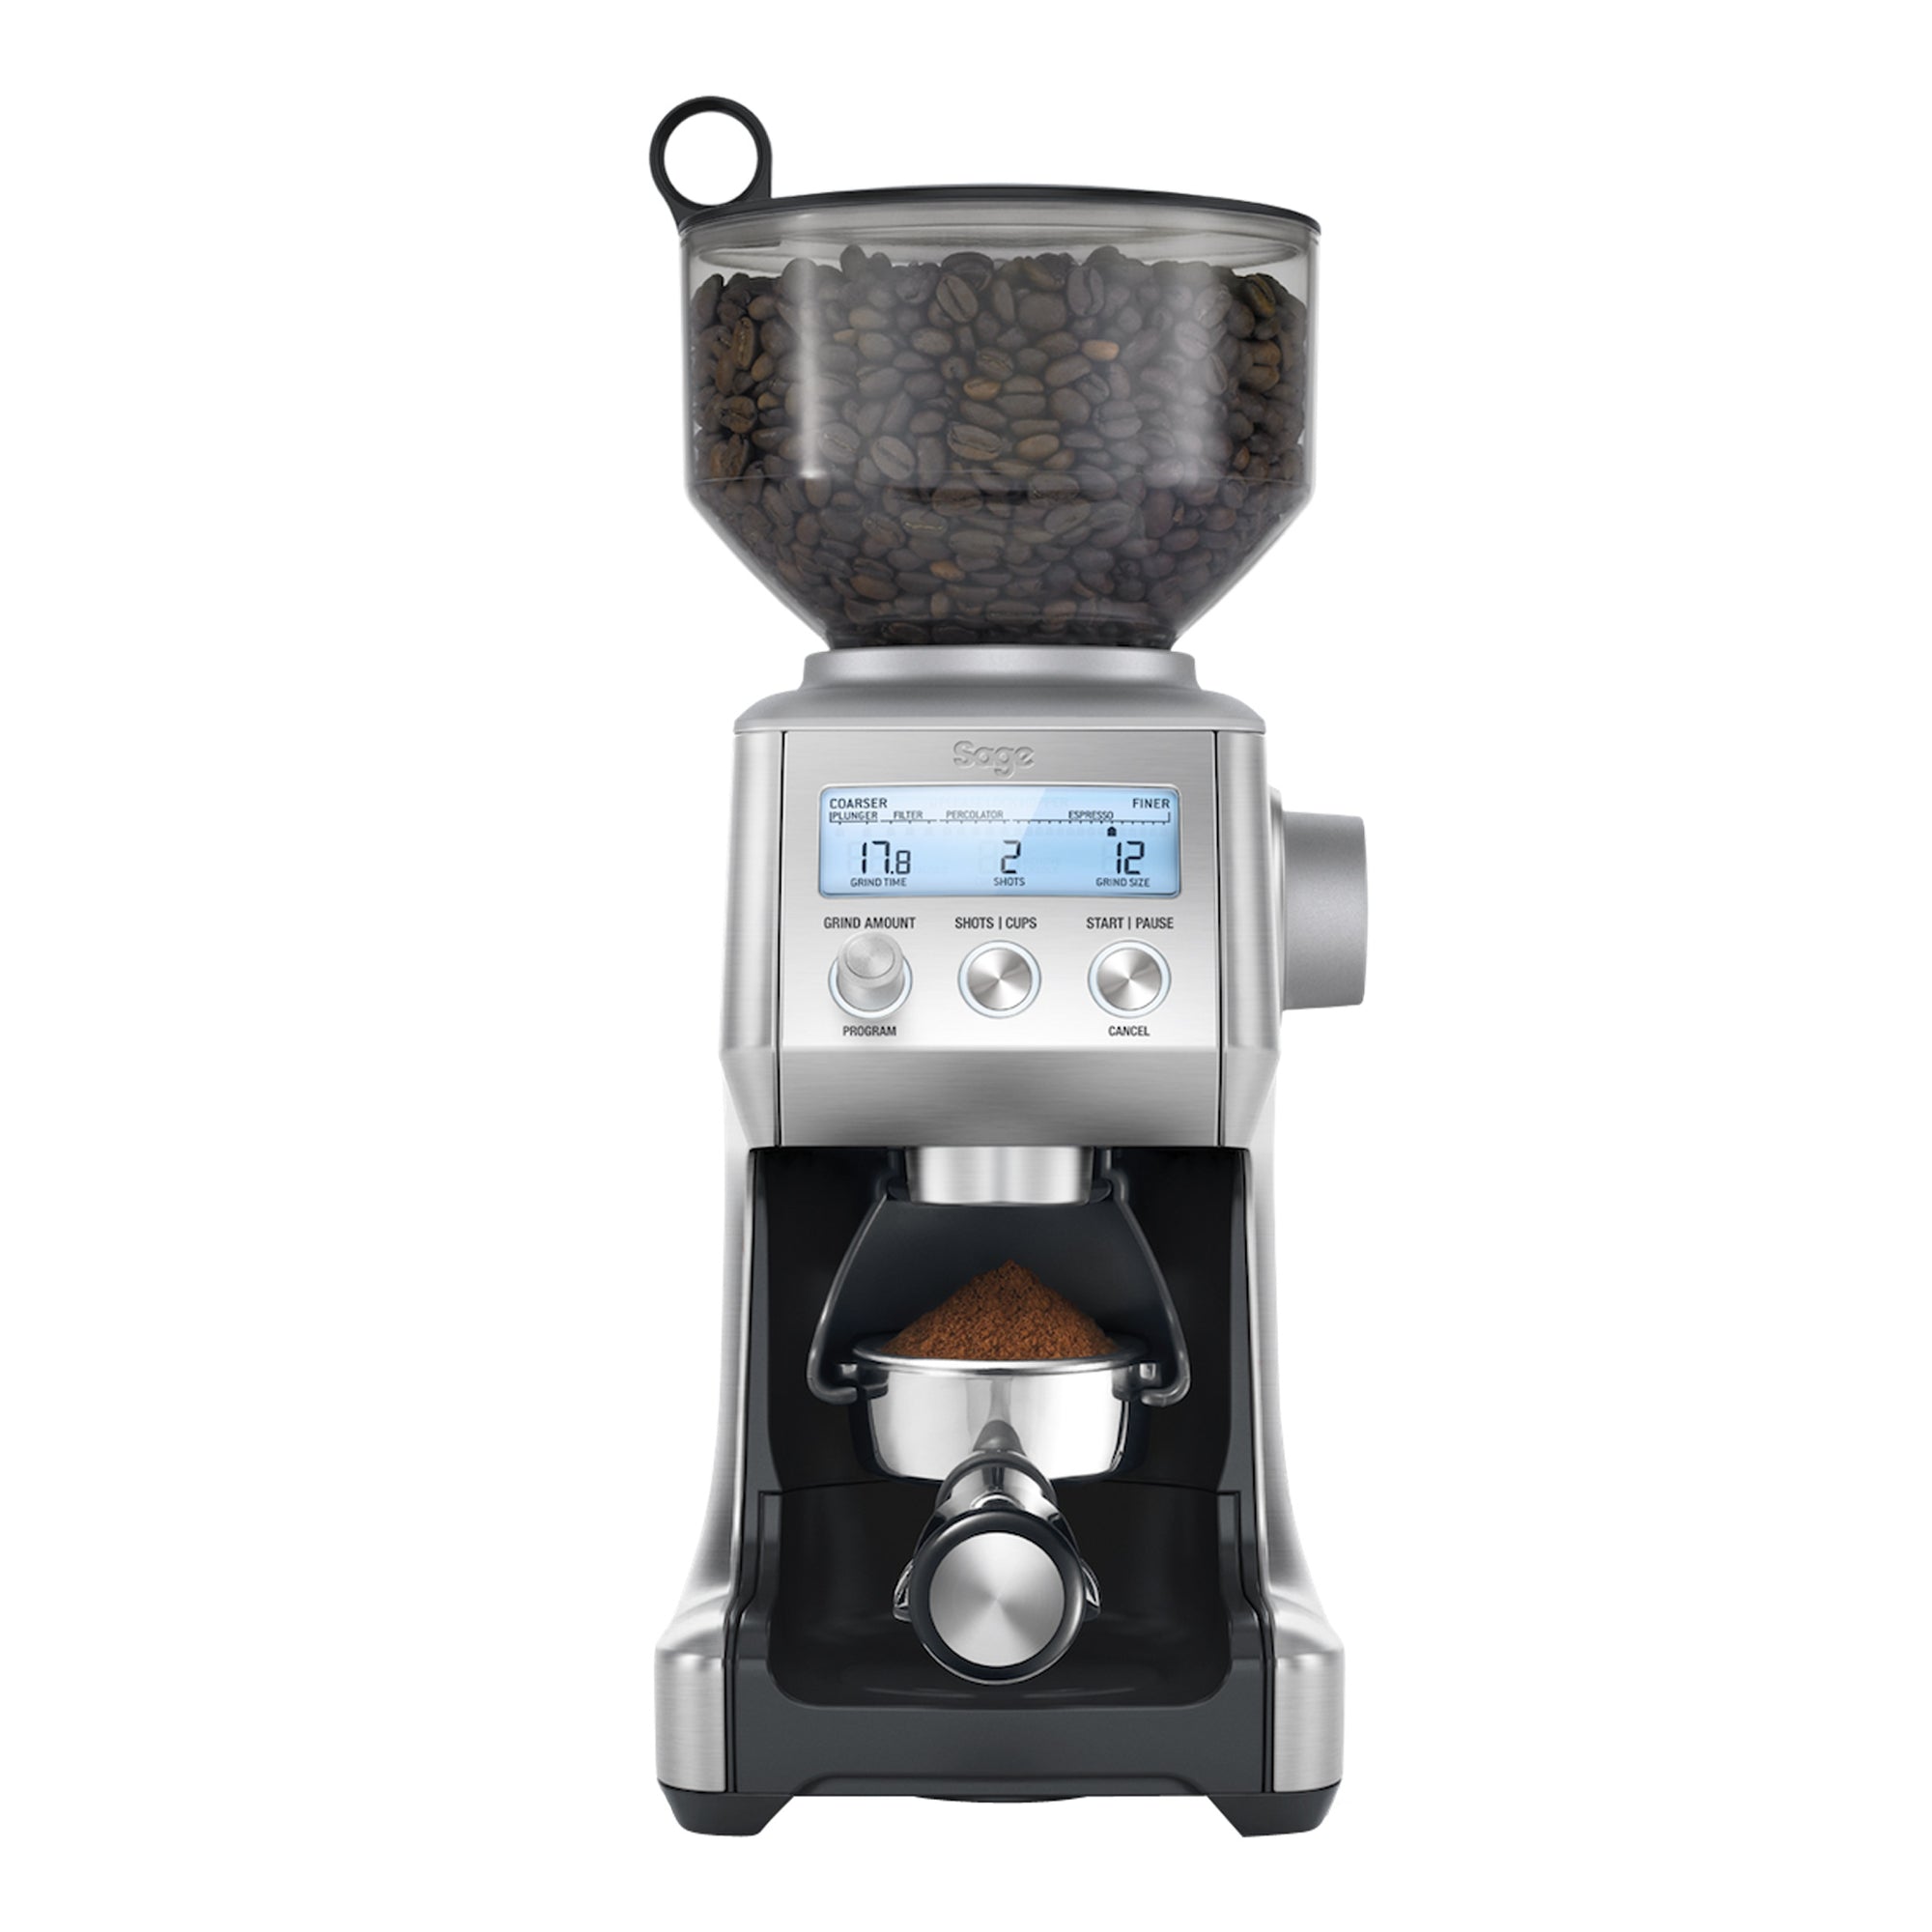 Grinder, The Smart Grinder - Sage - Espresso Gear